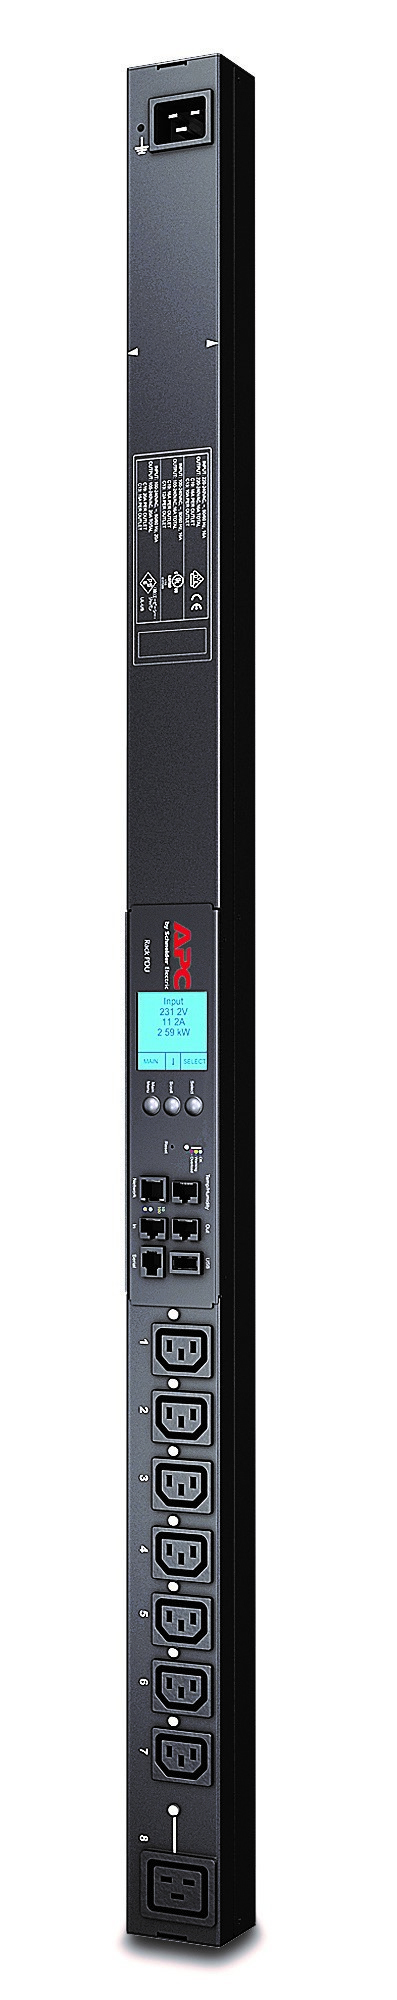 Rack PDU 2G, Switched, ZeroU, 20A/208V, 16A/230V, (7) C13 & (1) C19 AP8958 - C2000